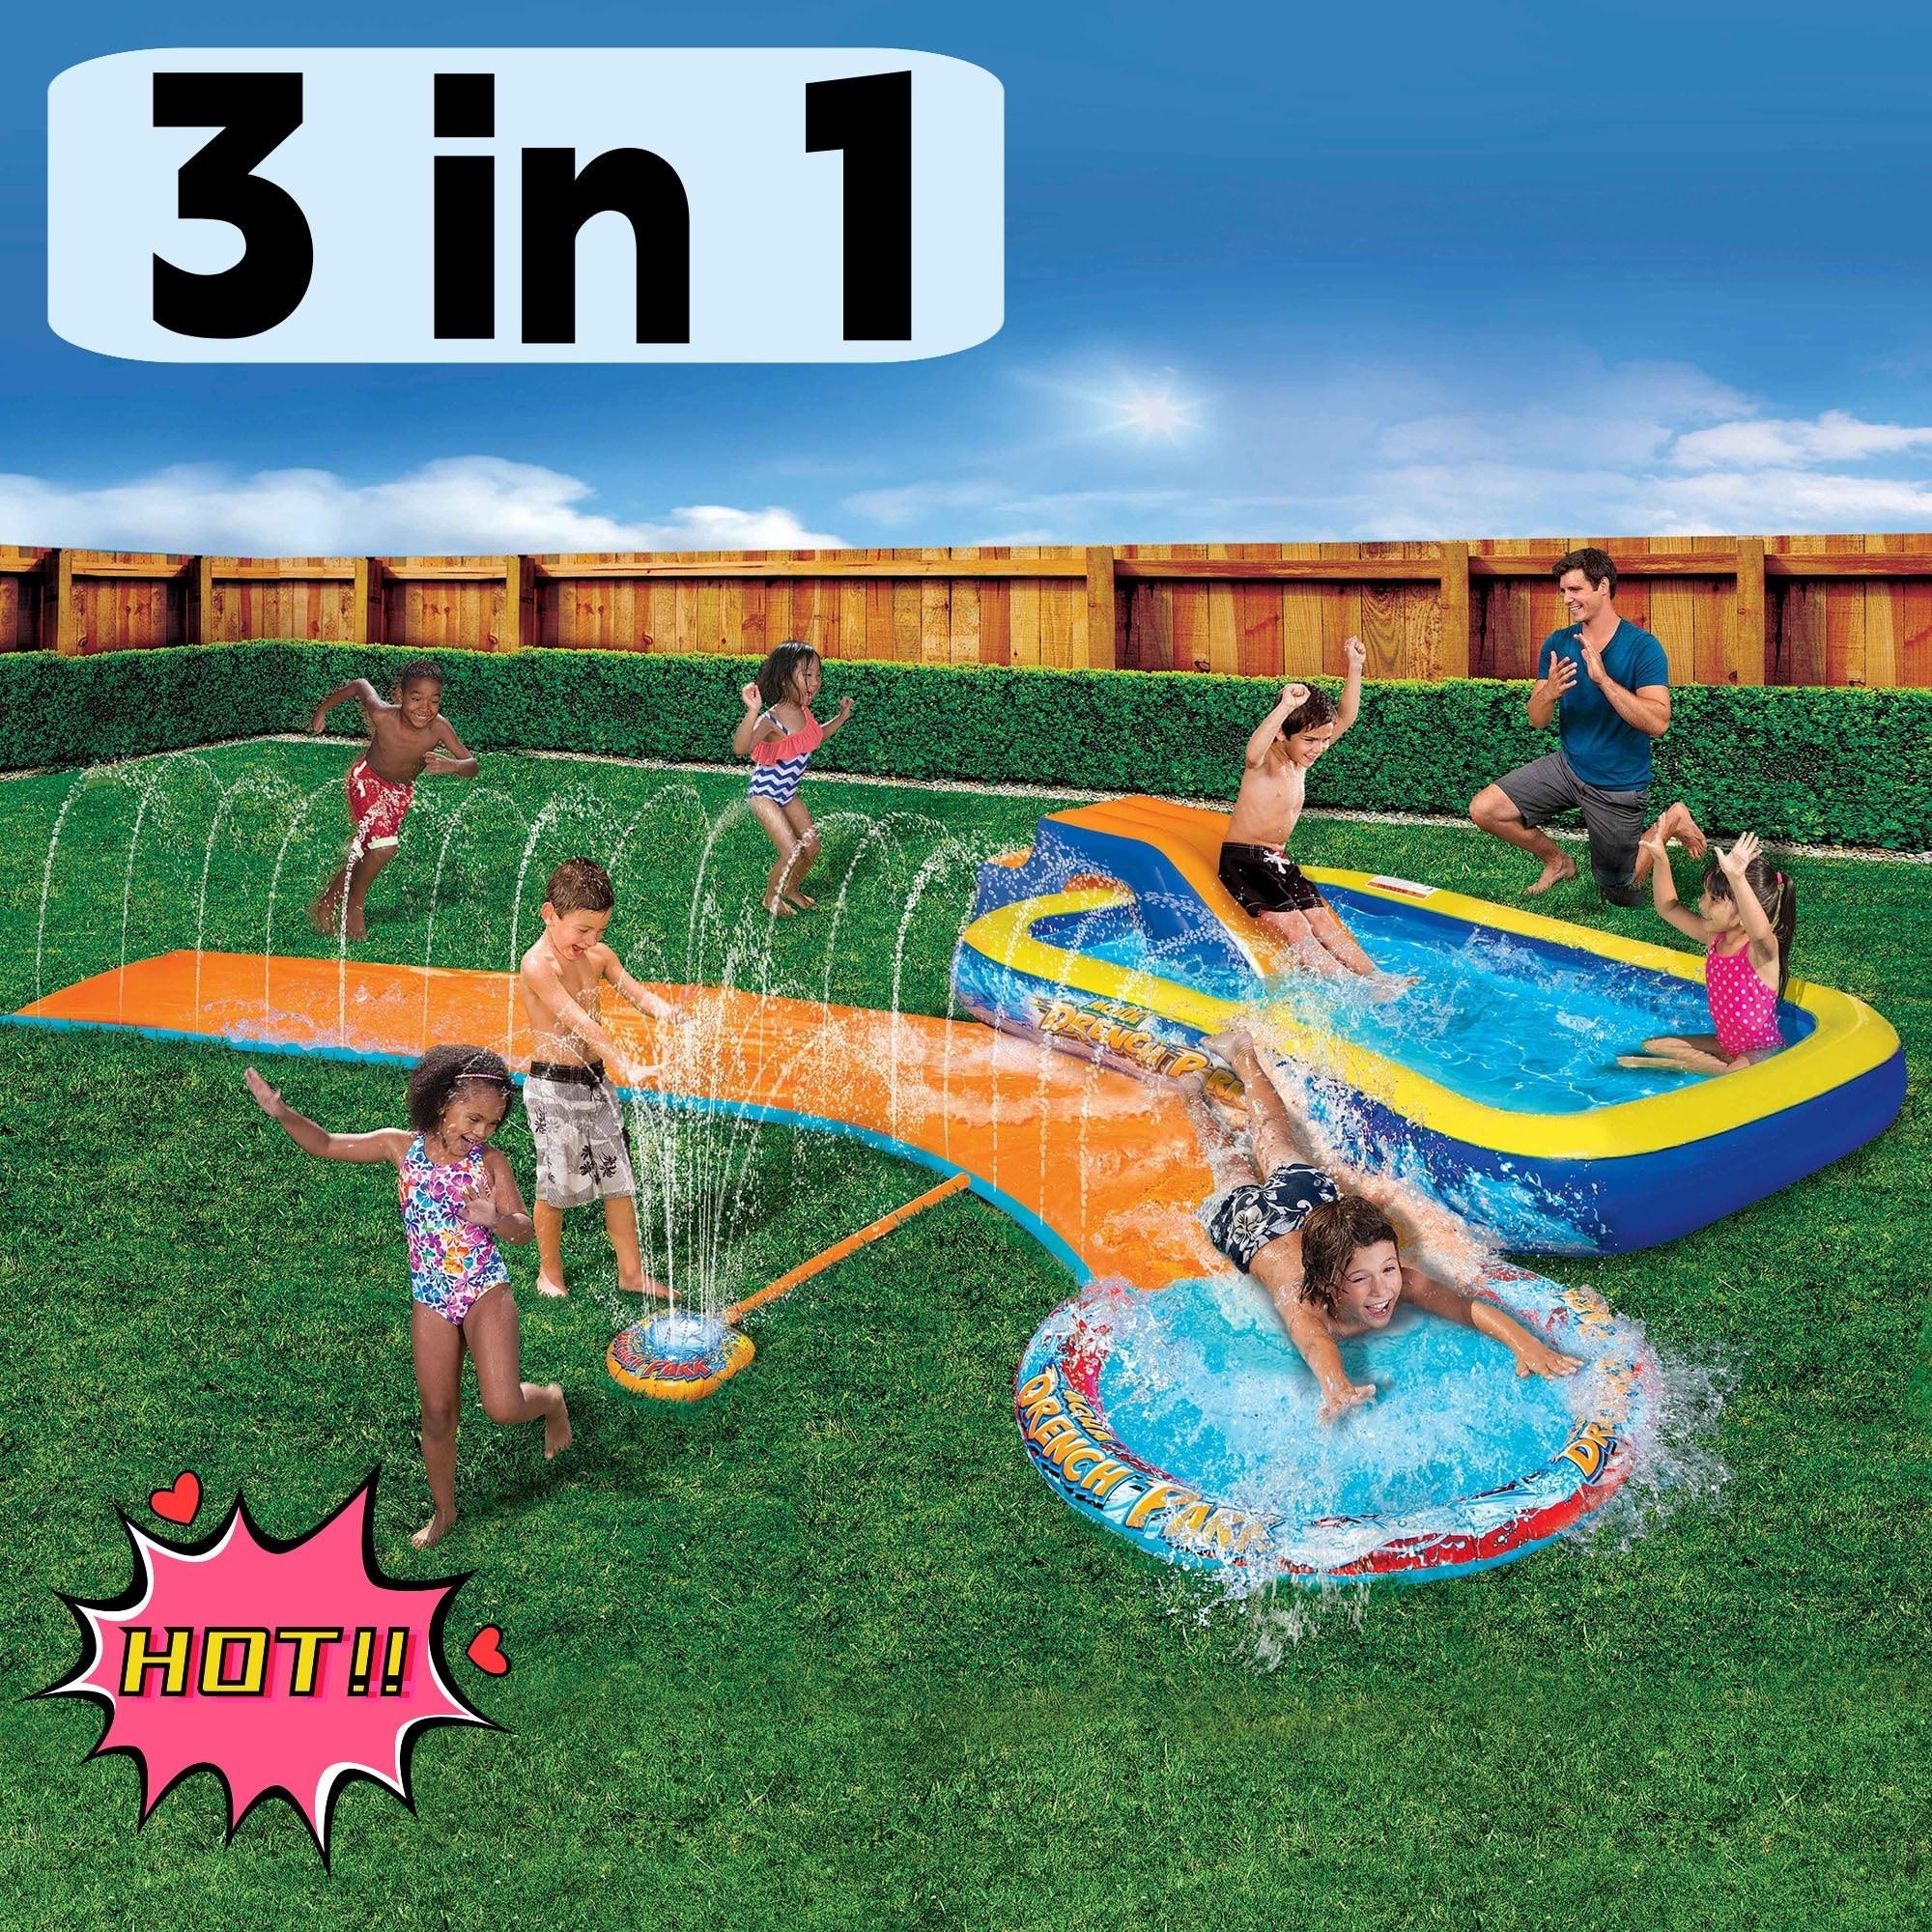 3-In-1 Splash Park w/ Pool, Sprinkler & Waterslide - Bargainwizz